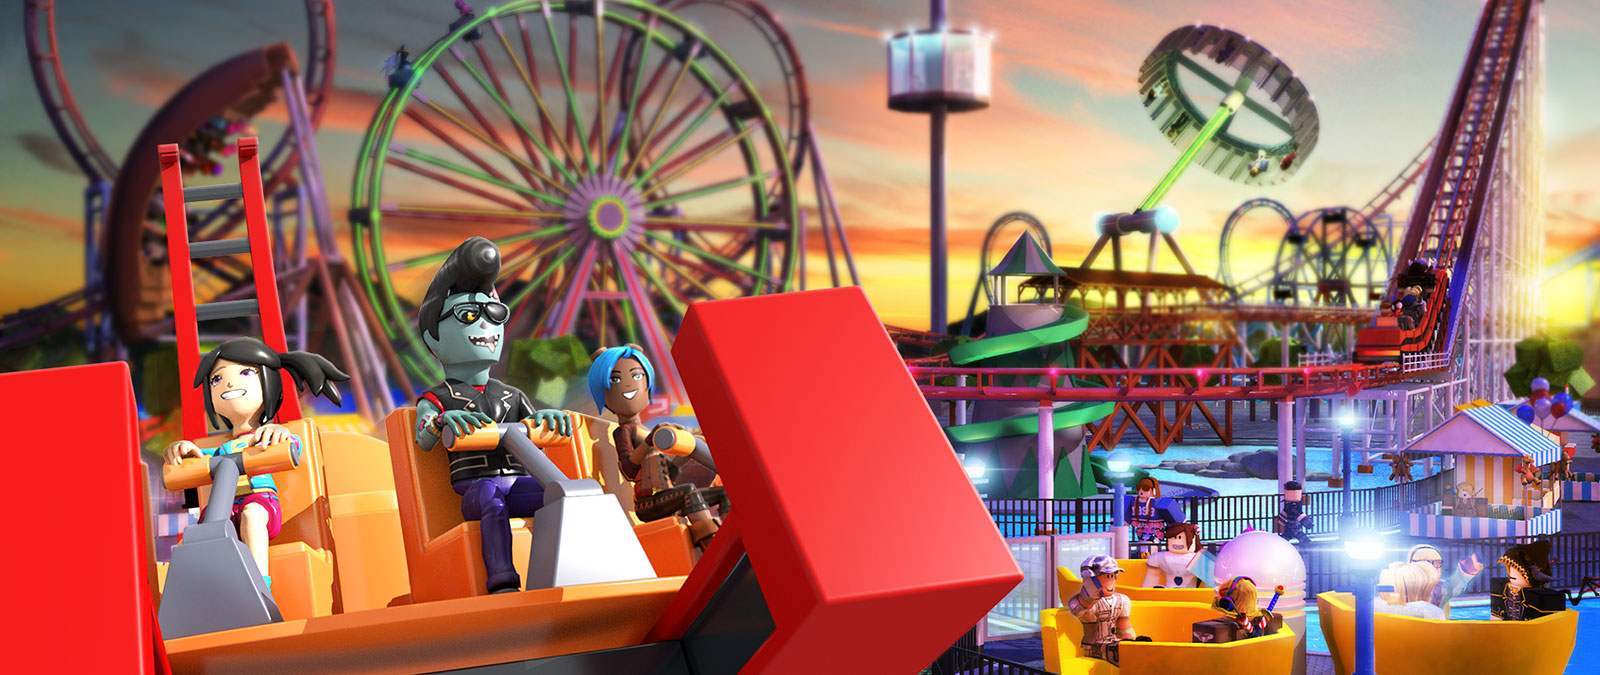 Roblox karakterleri Theme Park Tycoon'da arka planda bir hız treni ve dönme dolabın bulunduğu bir karnaval oyuncağında